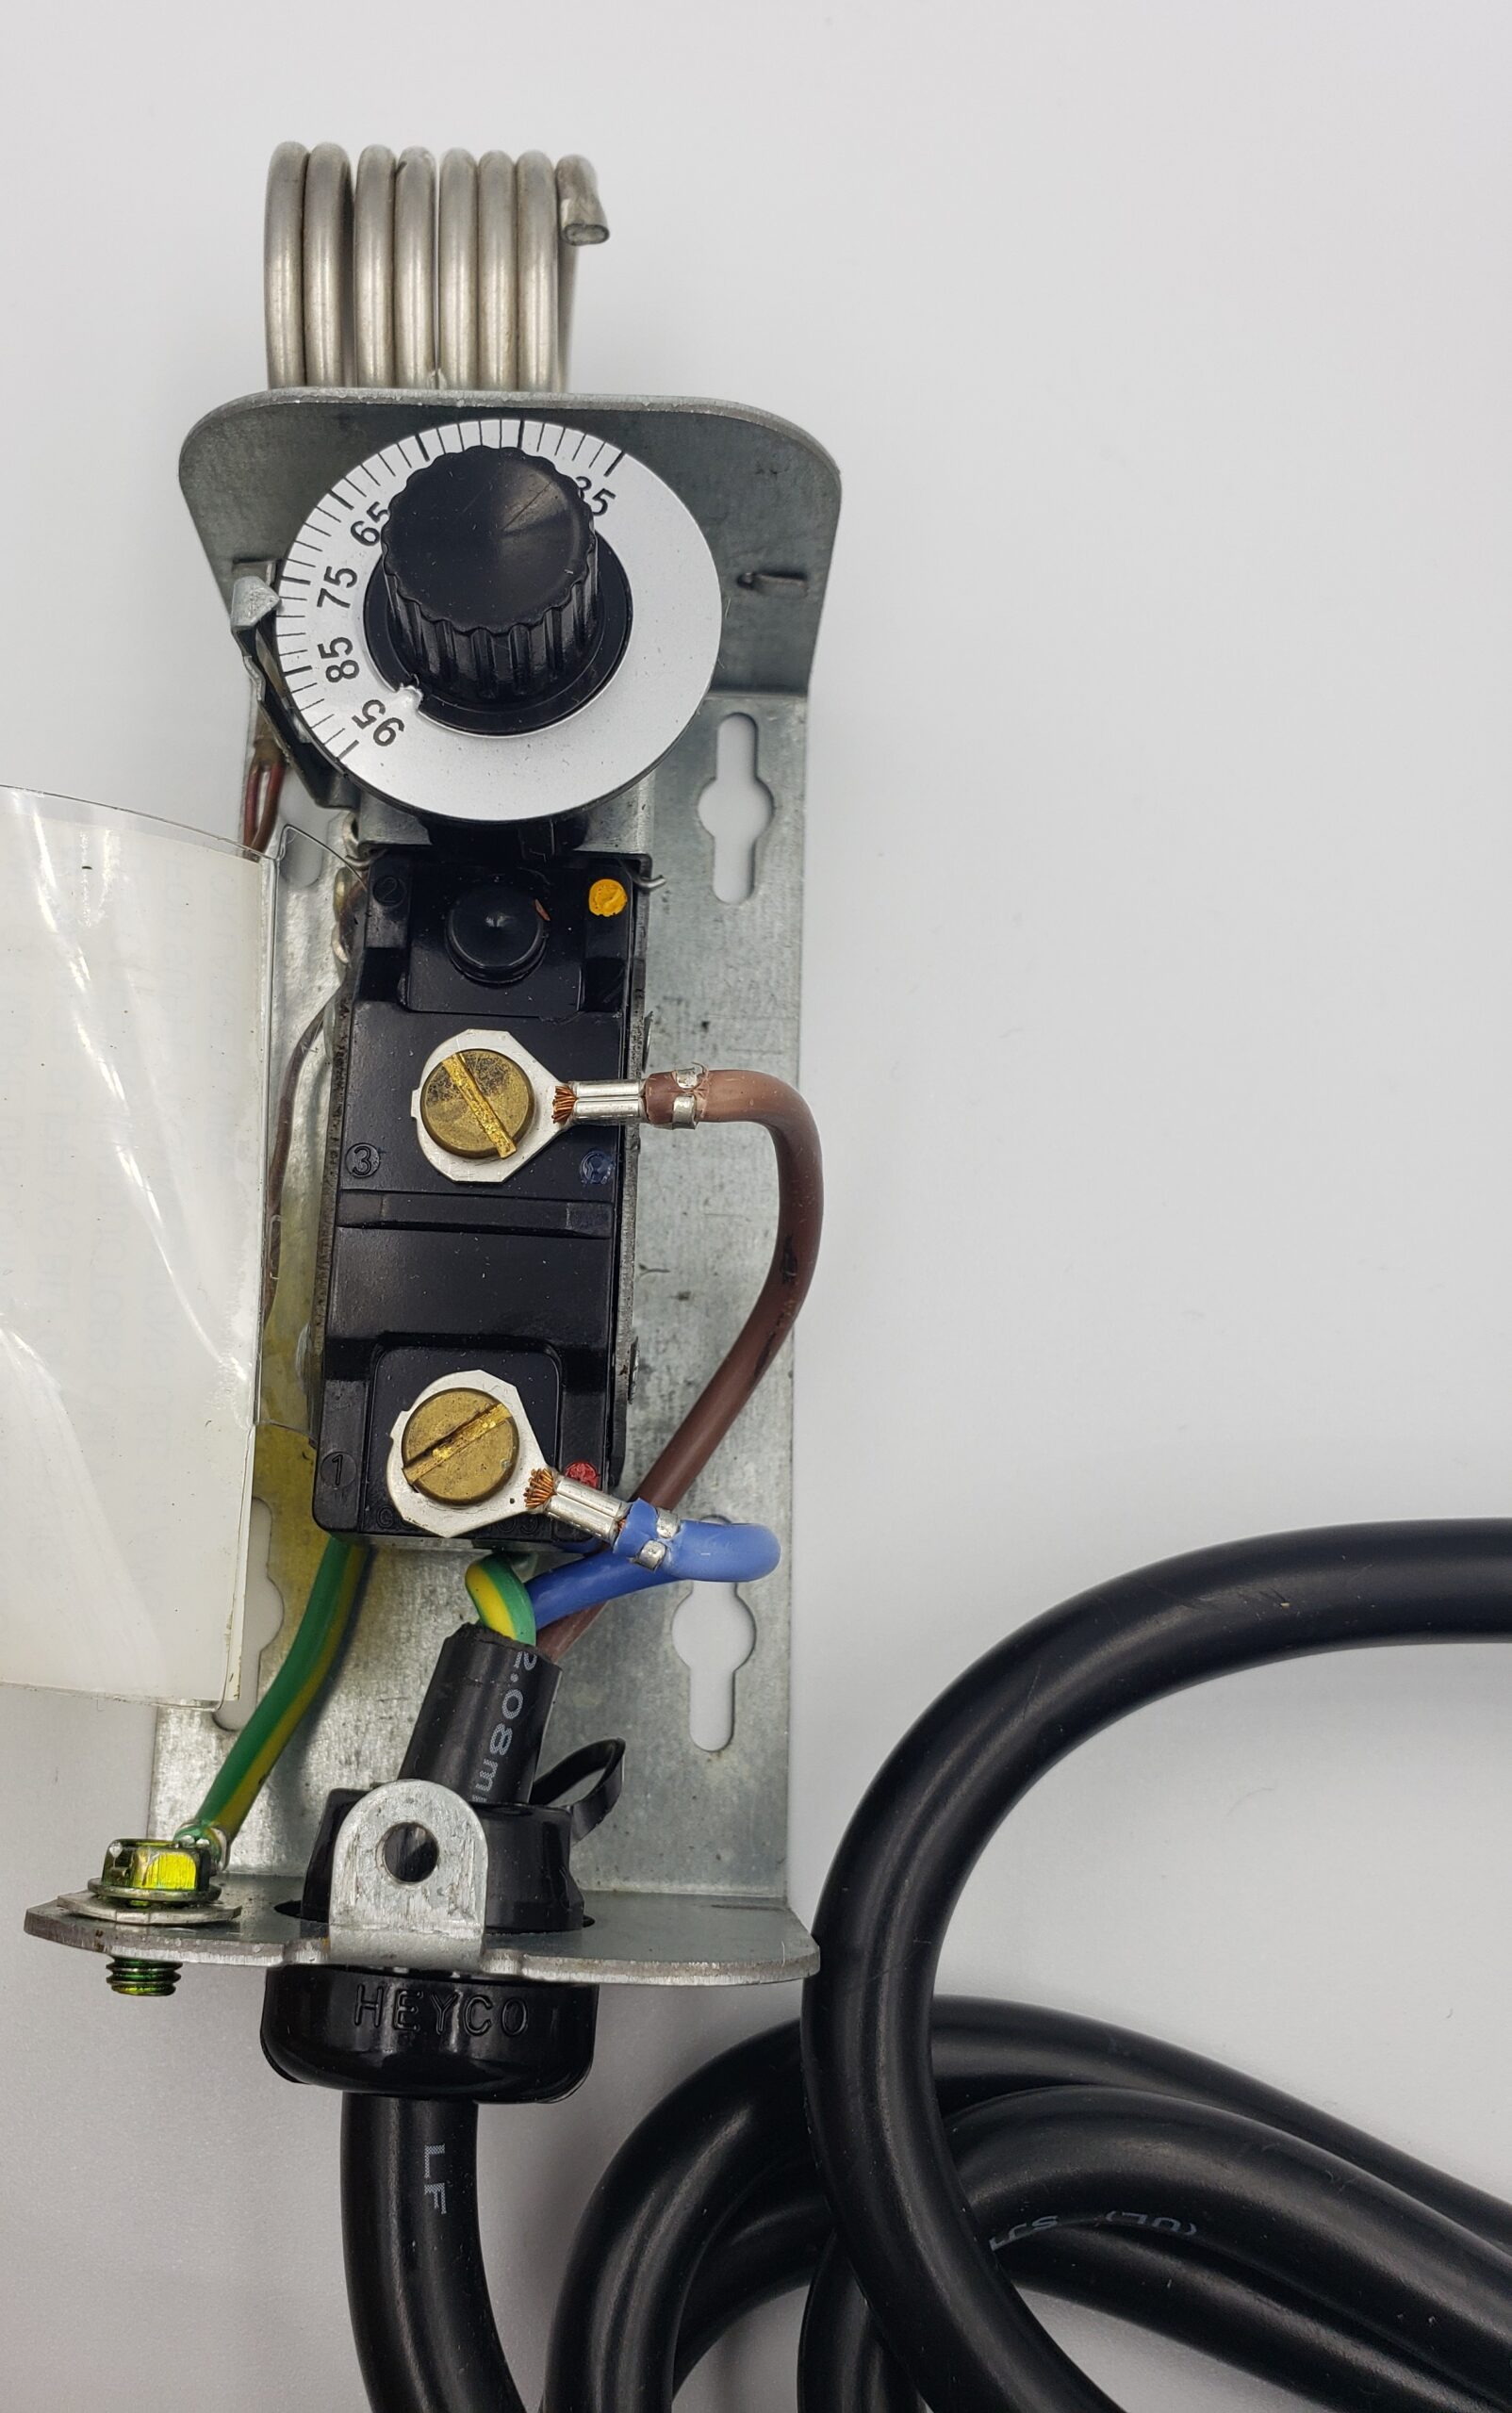 MCP 1653085: Thermostat de prise, avec Capteur extérieur chez